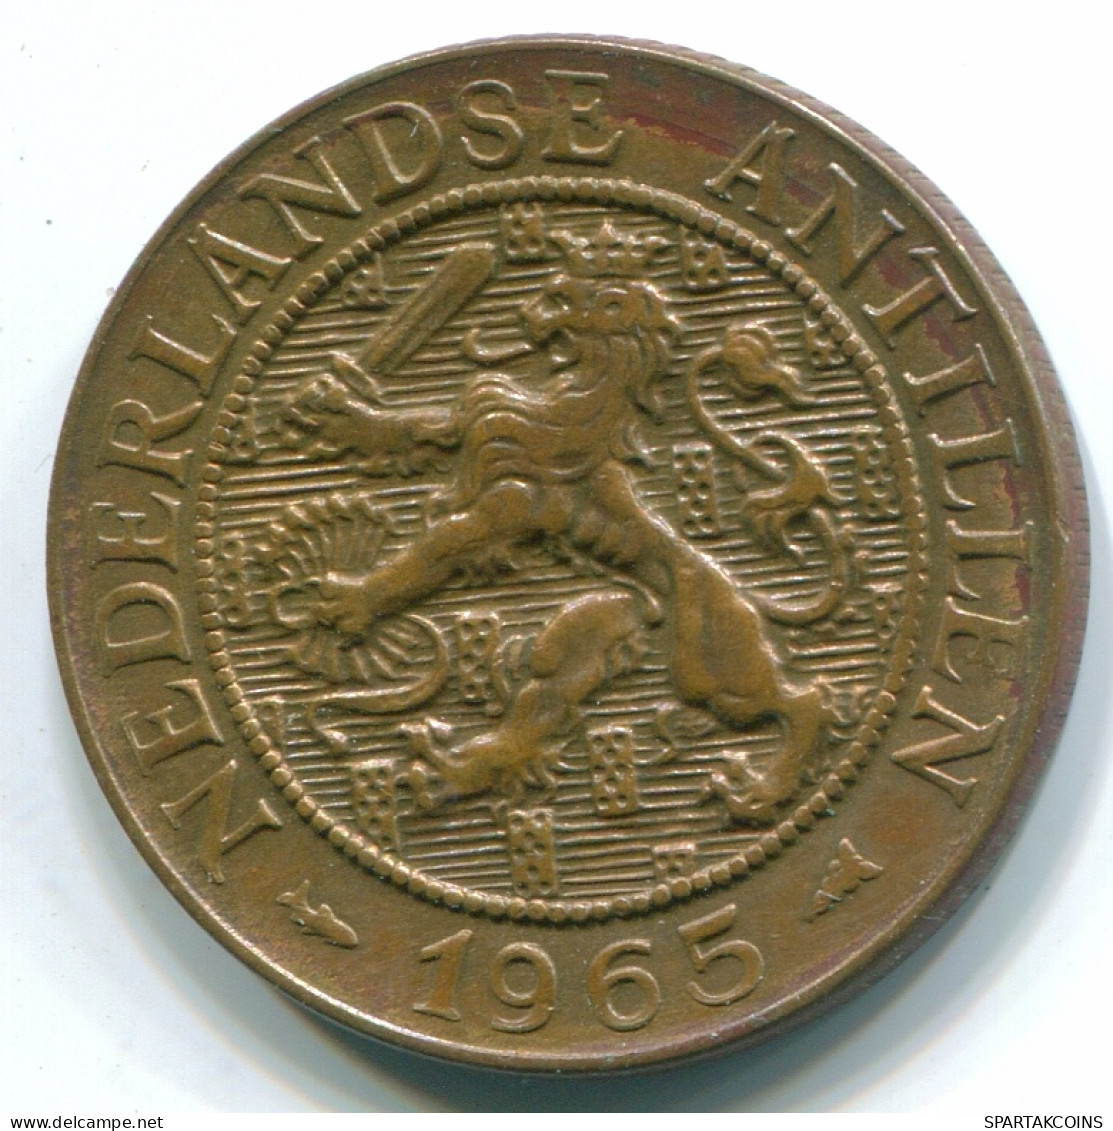 2 1/2 CENT 1965 CURACAO NIEDERLANDE Bronze Koloniale Münze #S10206.D - Curacao